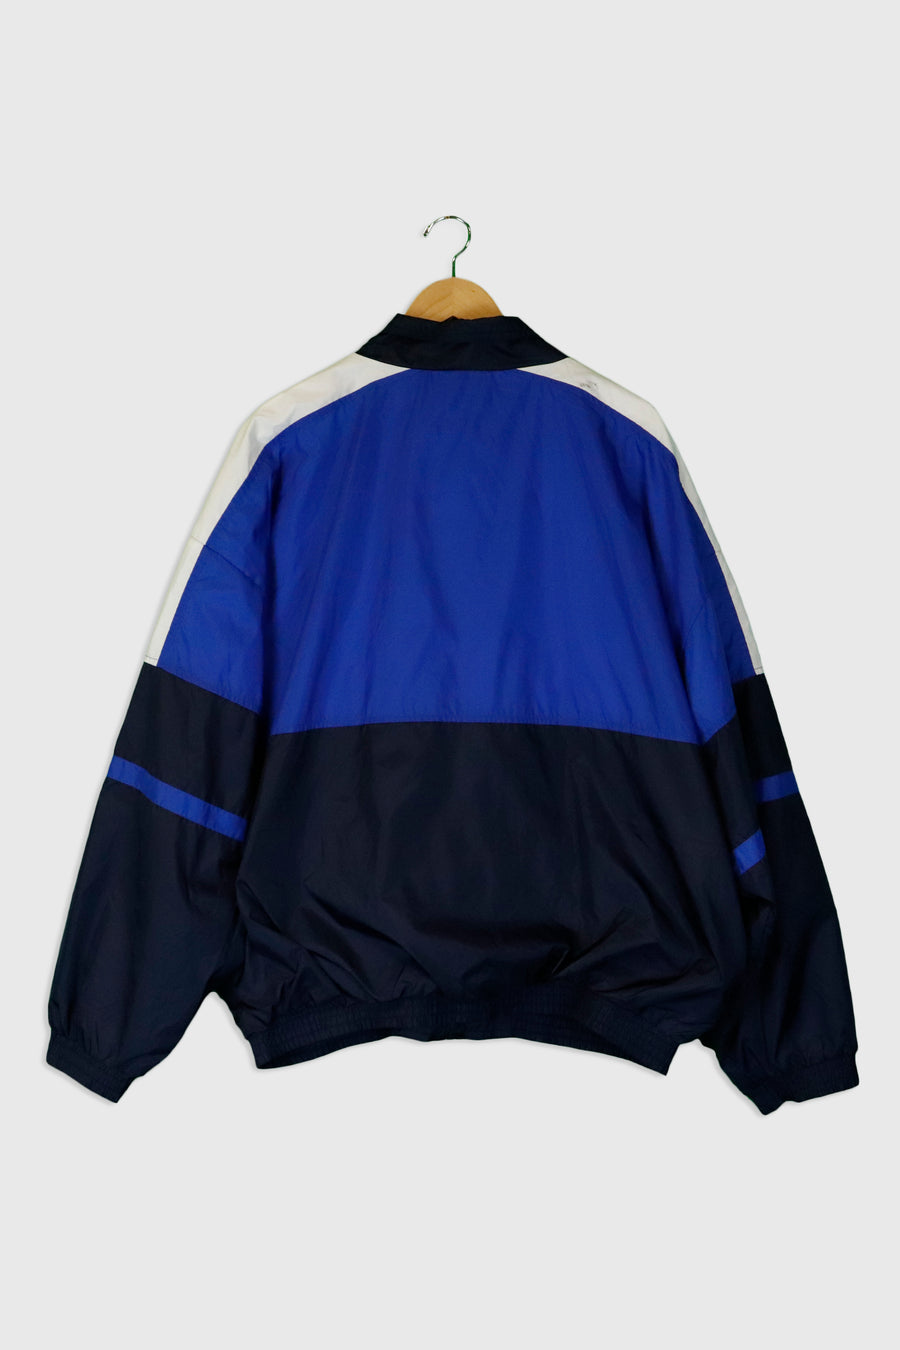 Vintage Reebok Full Zip Multi Colour Lined Jacket Sz XL